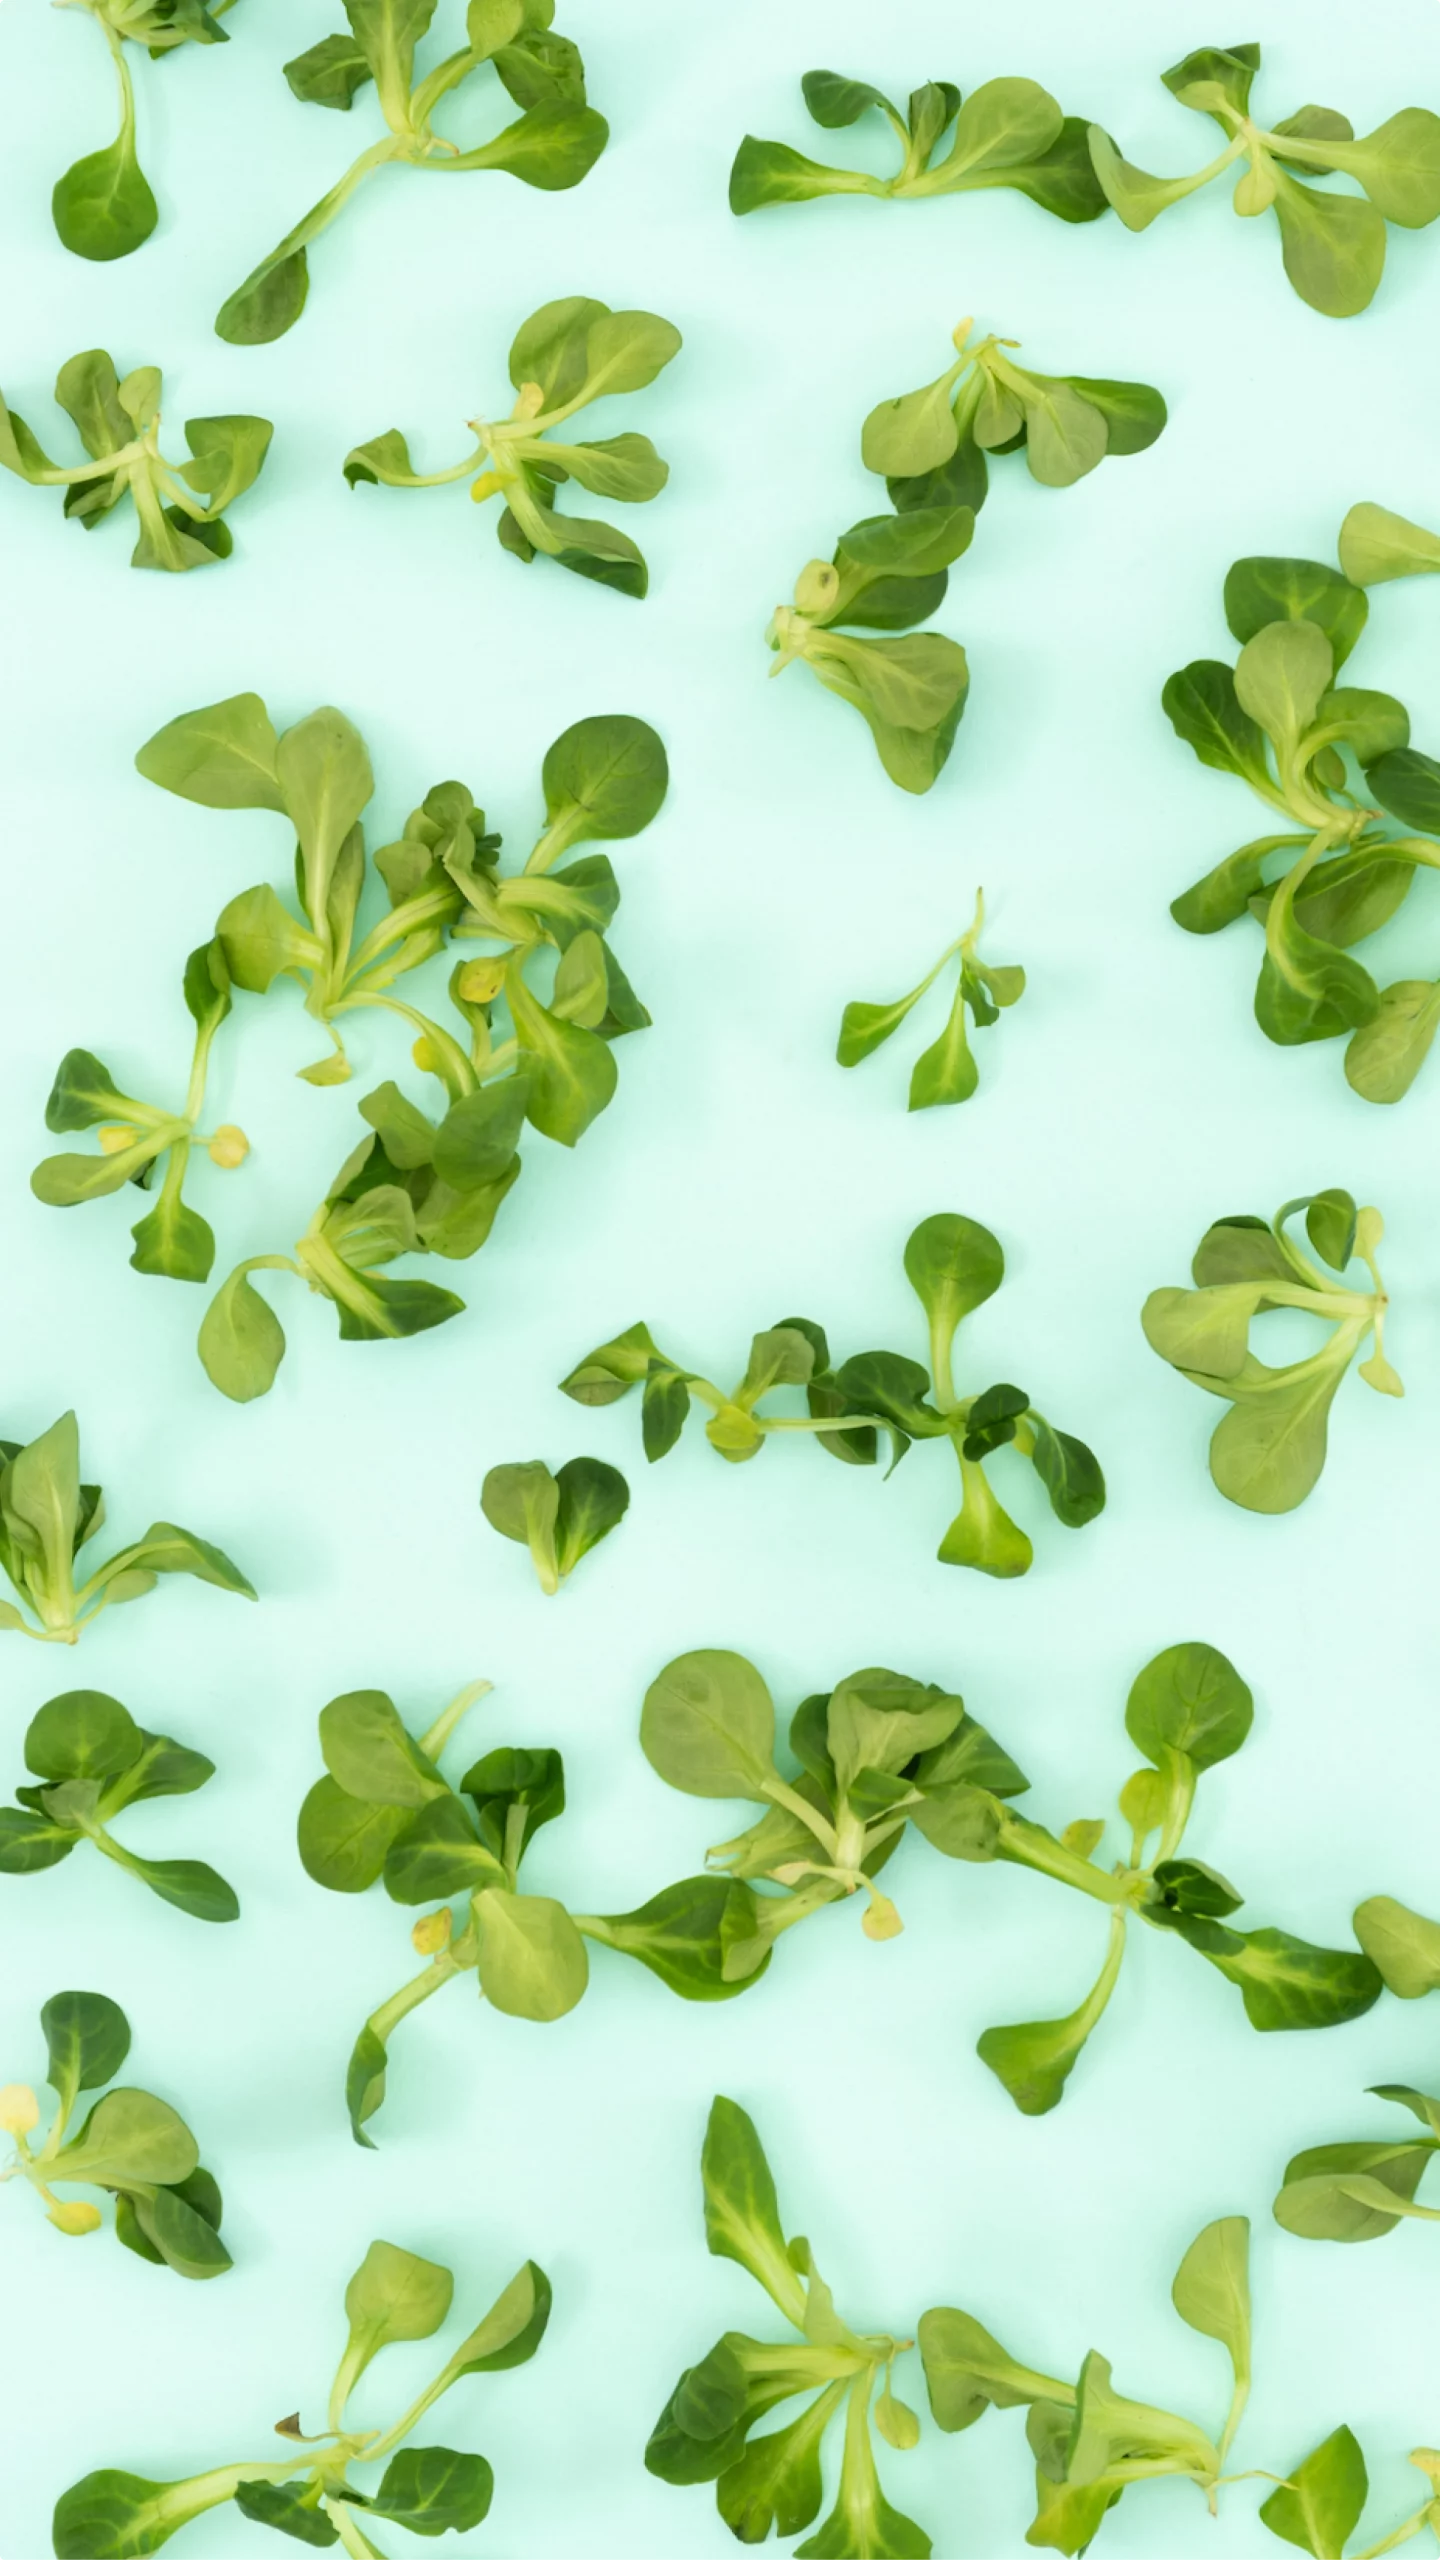 Microgreens minimalistic wallpaper